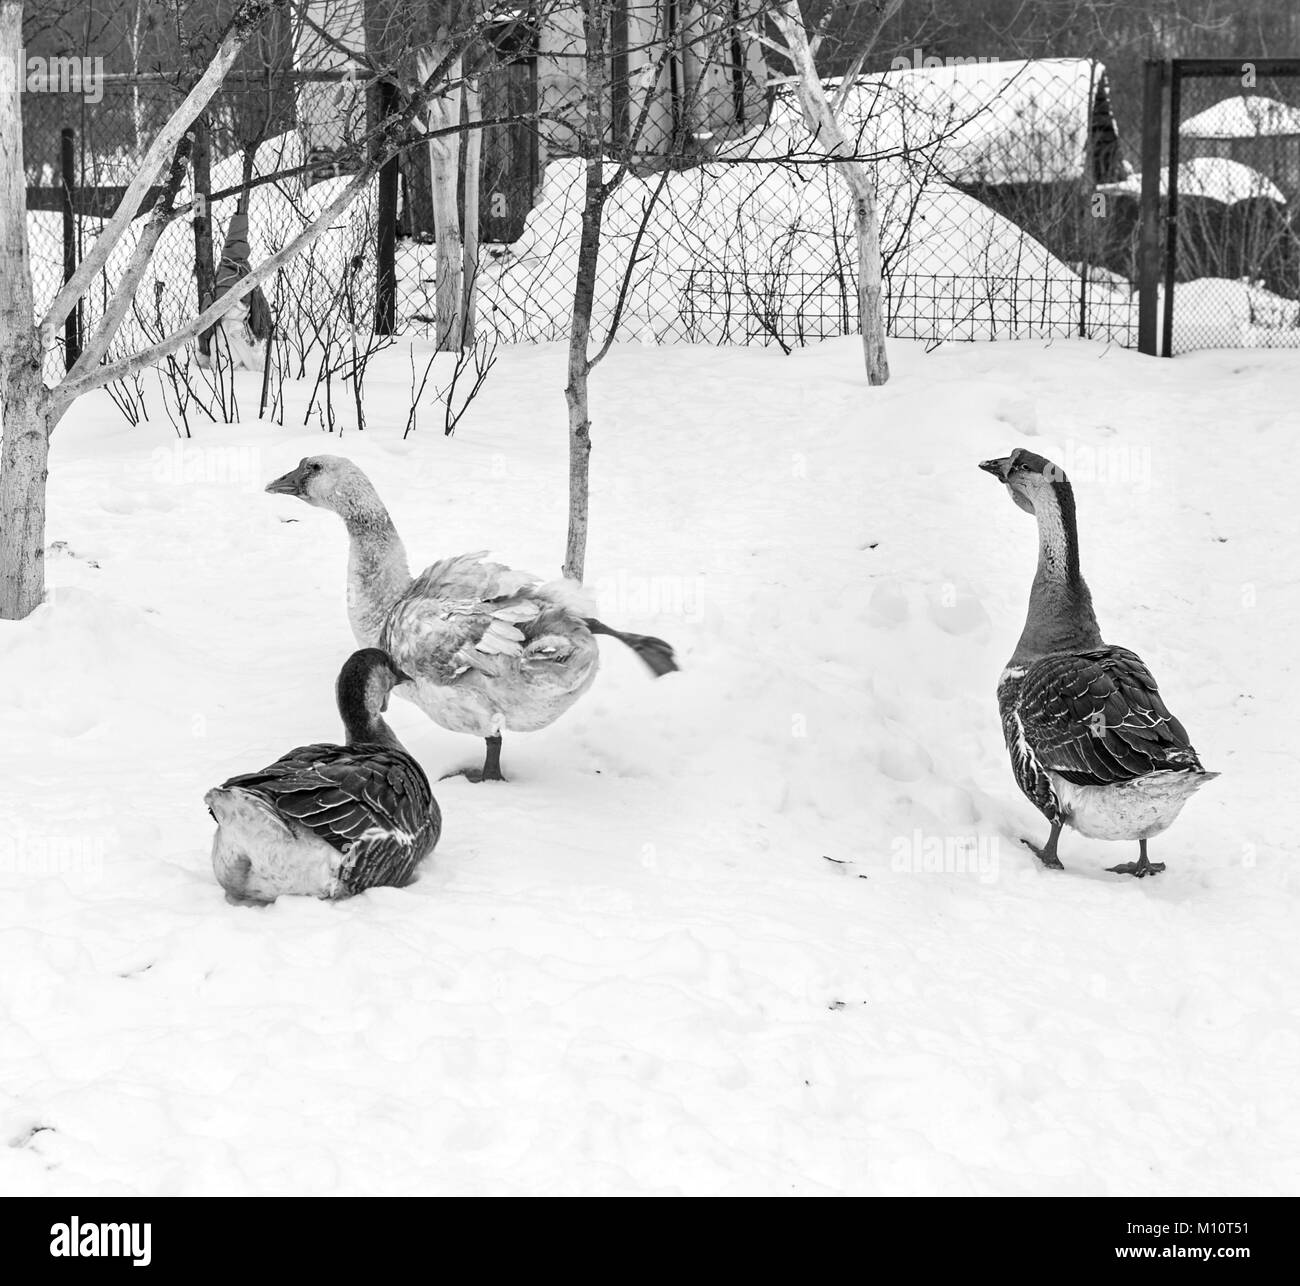 Trois oies dans la neige en hiver jour nuageux en noir et blanc Banque D'Images